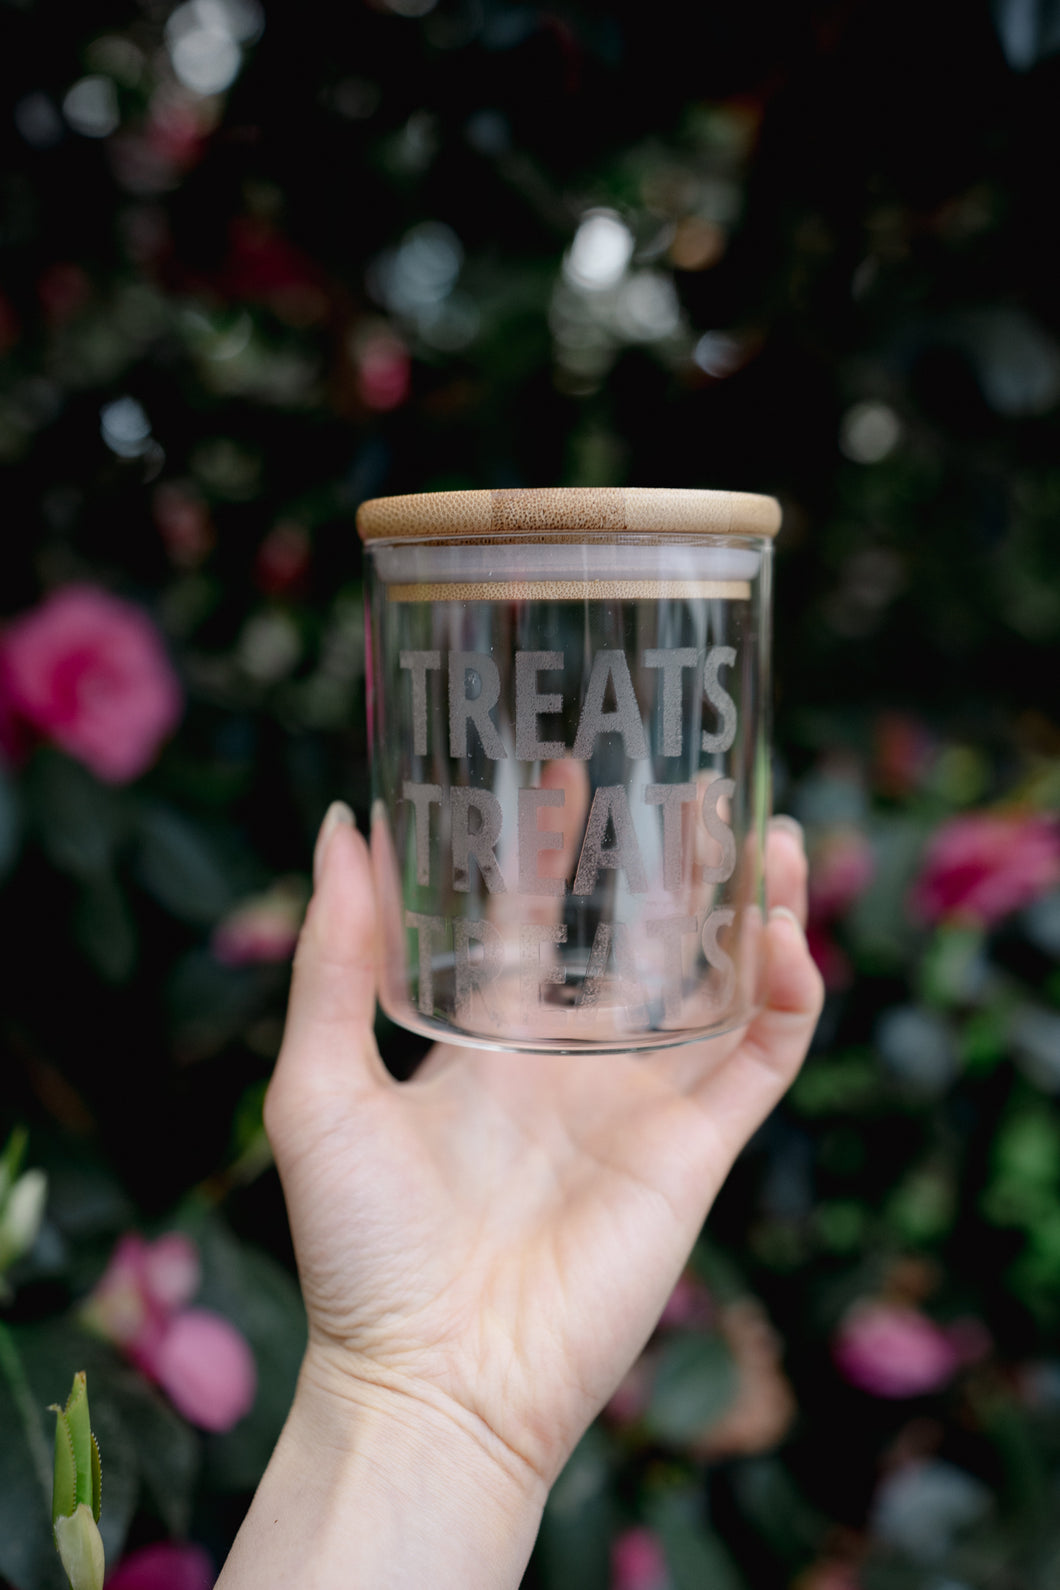 TREATS TREATS TREATS | Treat Jar